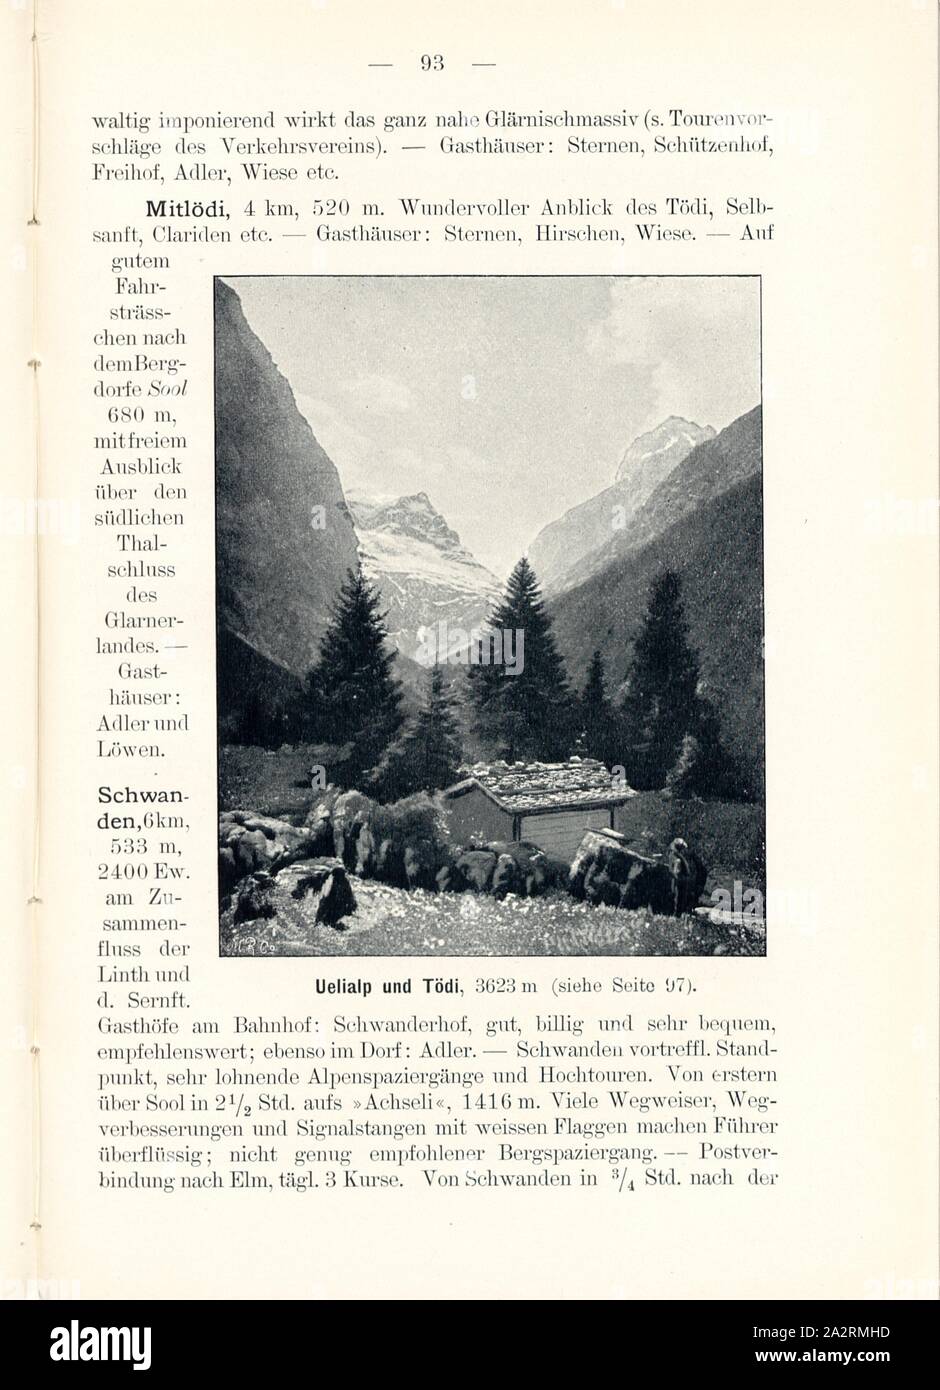 Uelialp and Tödi, 3623 m, Uelialp in the Canton of Glarus, Signed: M.R.C, Fig. 95, p. 93, Meisenbach, Riffarth und Co. (imp.), 1900, J. Knobel: Illustrierter Reisebegleiter für die Alpenstrasse des Klausen und ihre Zufahrtslinien. Glarus: Buchdruckerei J. Spälti, 1900 Stock Photo